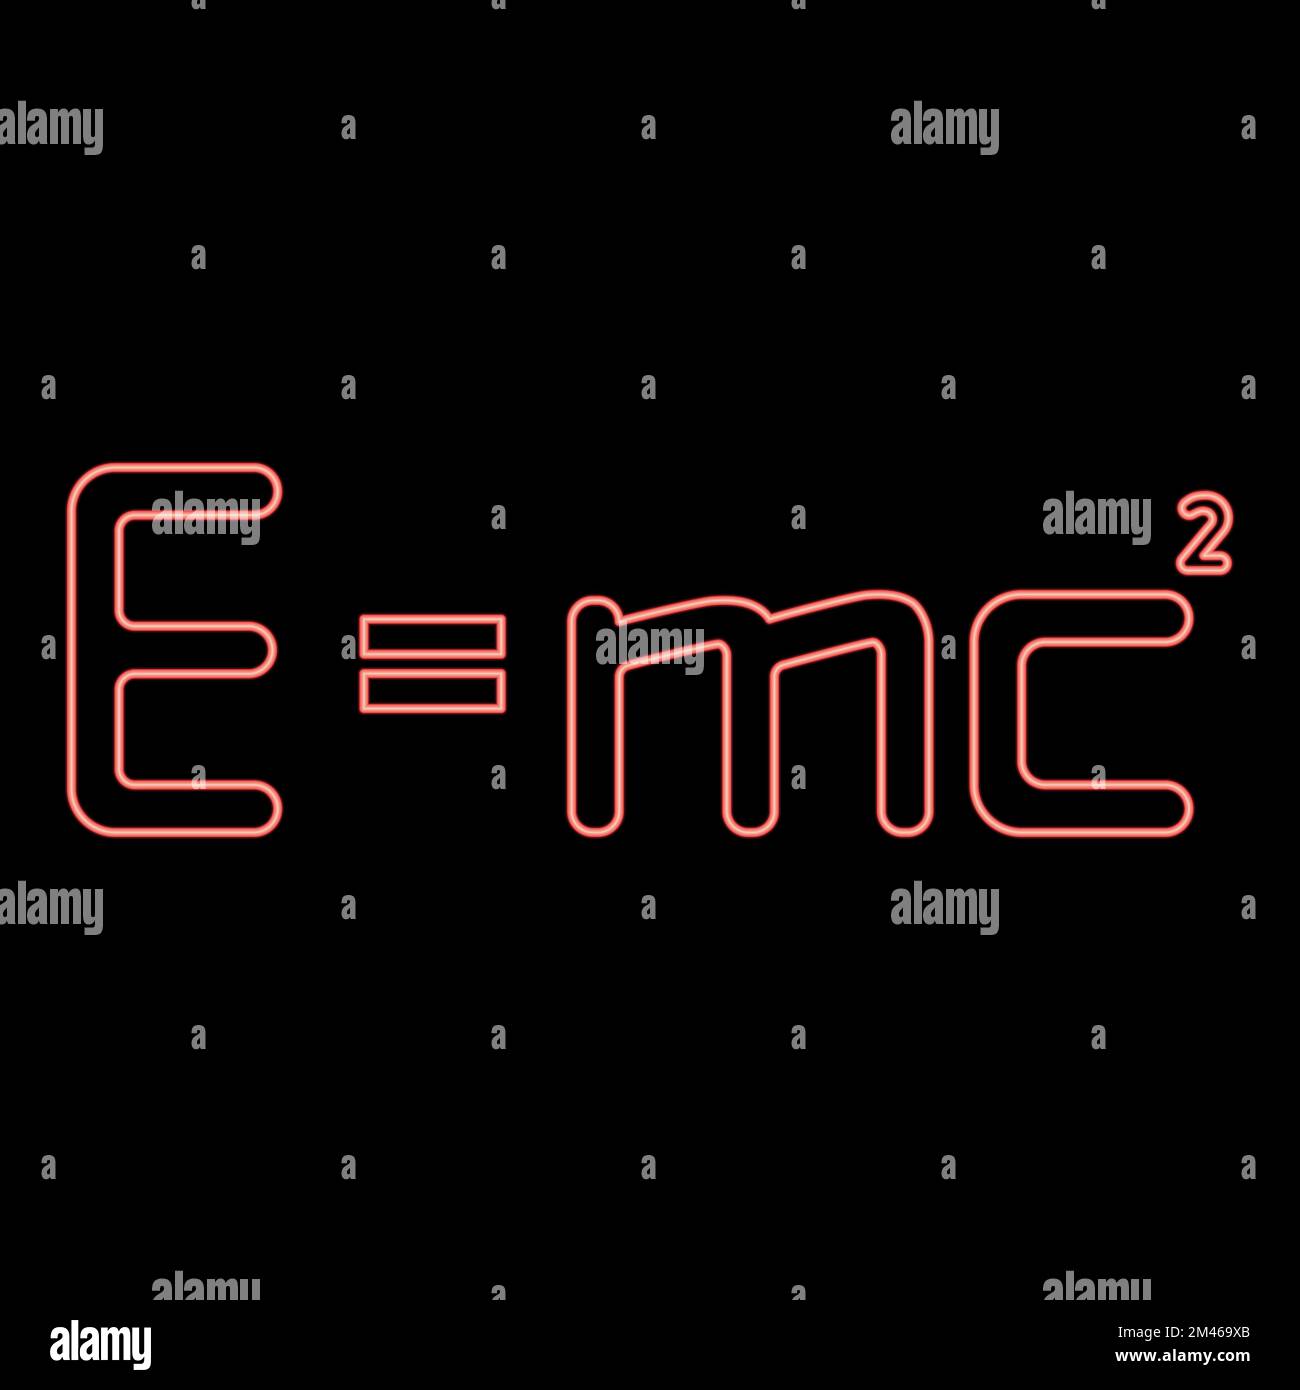 Neon e=mc² Formule d'énergie loi physique E=mc² signe e EQUAL mc 2 concept d'éducation théorie de la relativité rouge couleur vecteur illustration image style plat Illustration de Vecteur